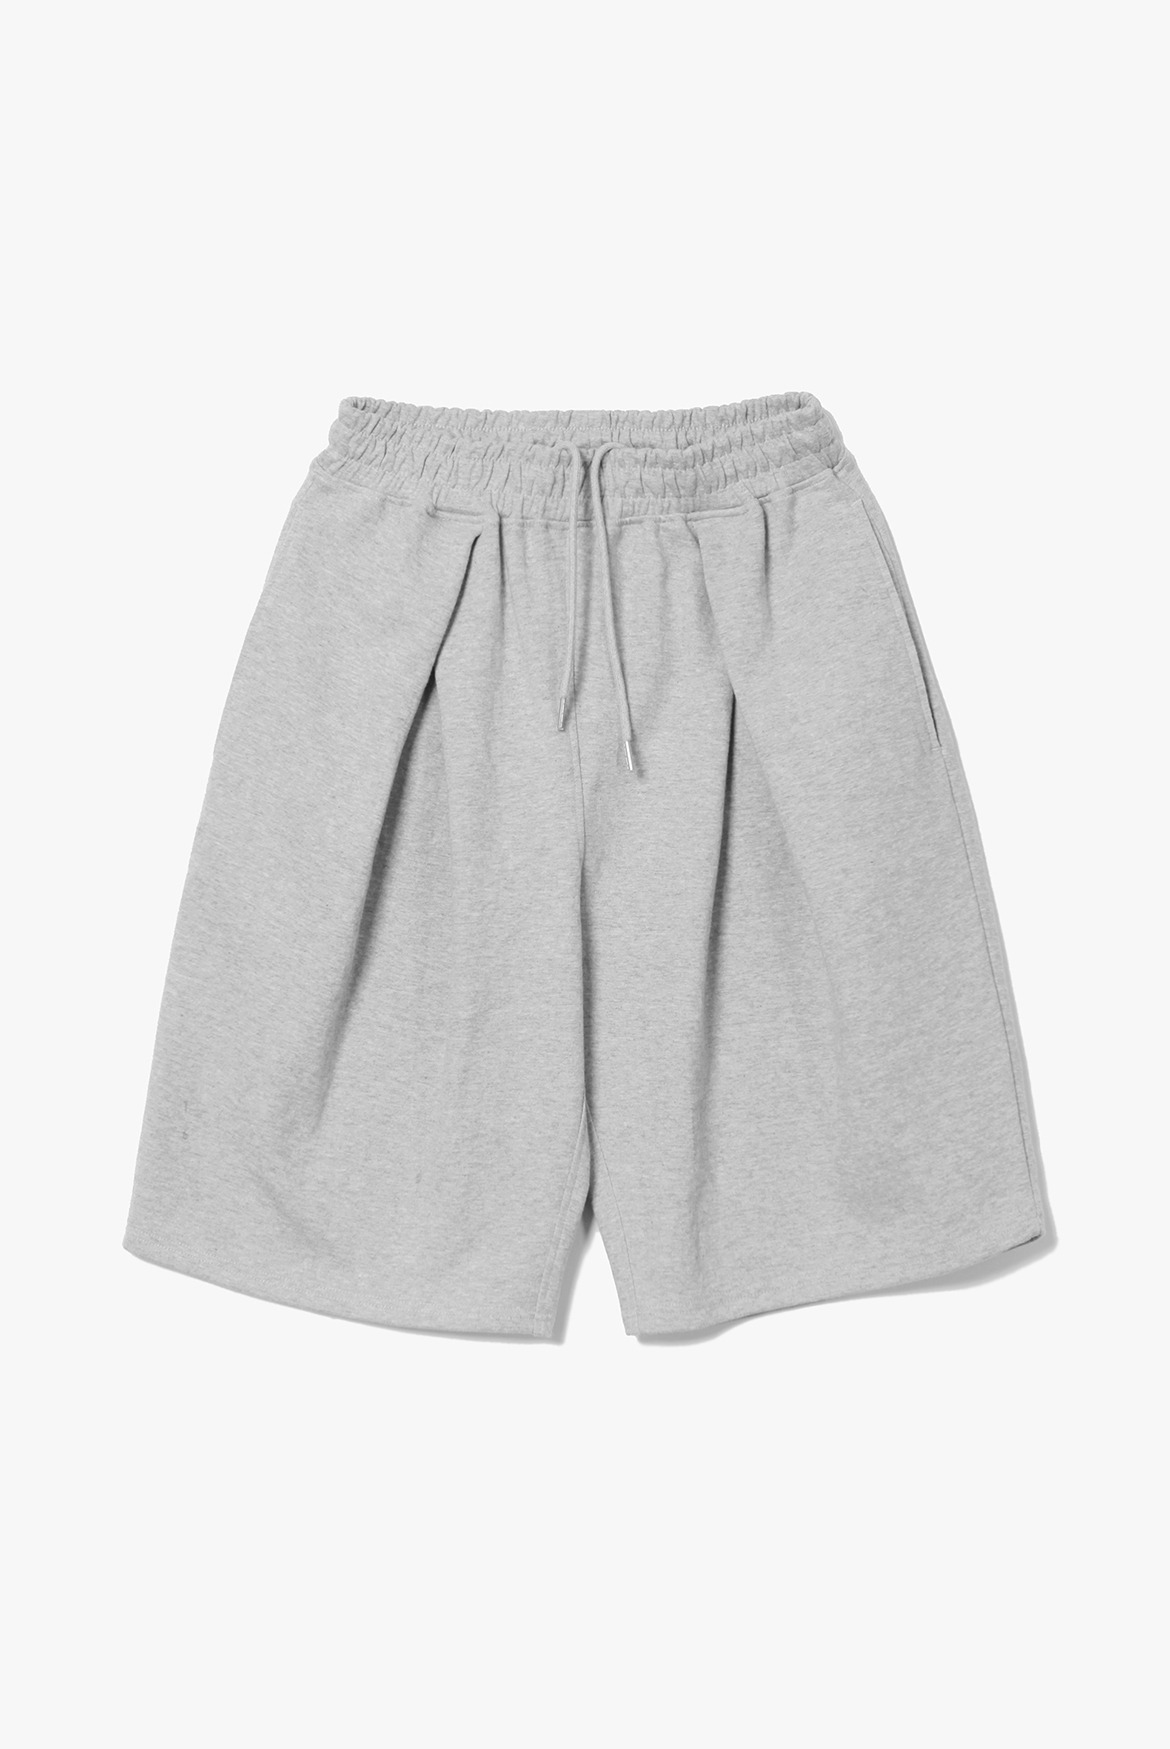 Bermuda Cross Sweat Shorts [Grey]